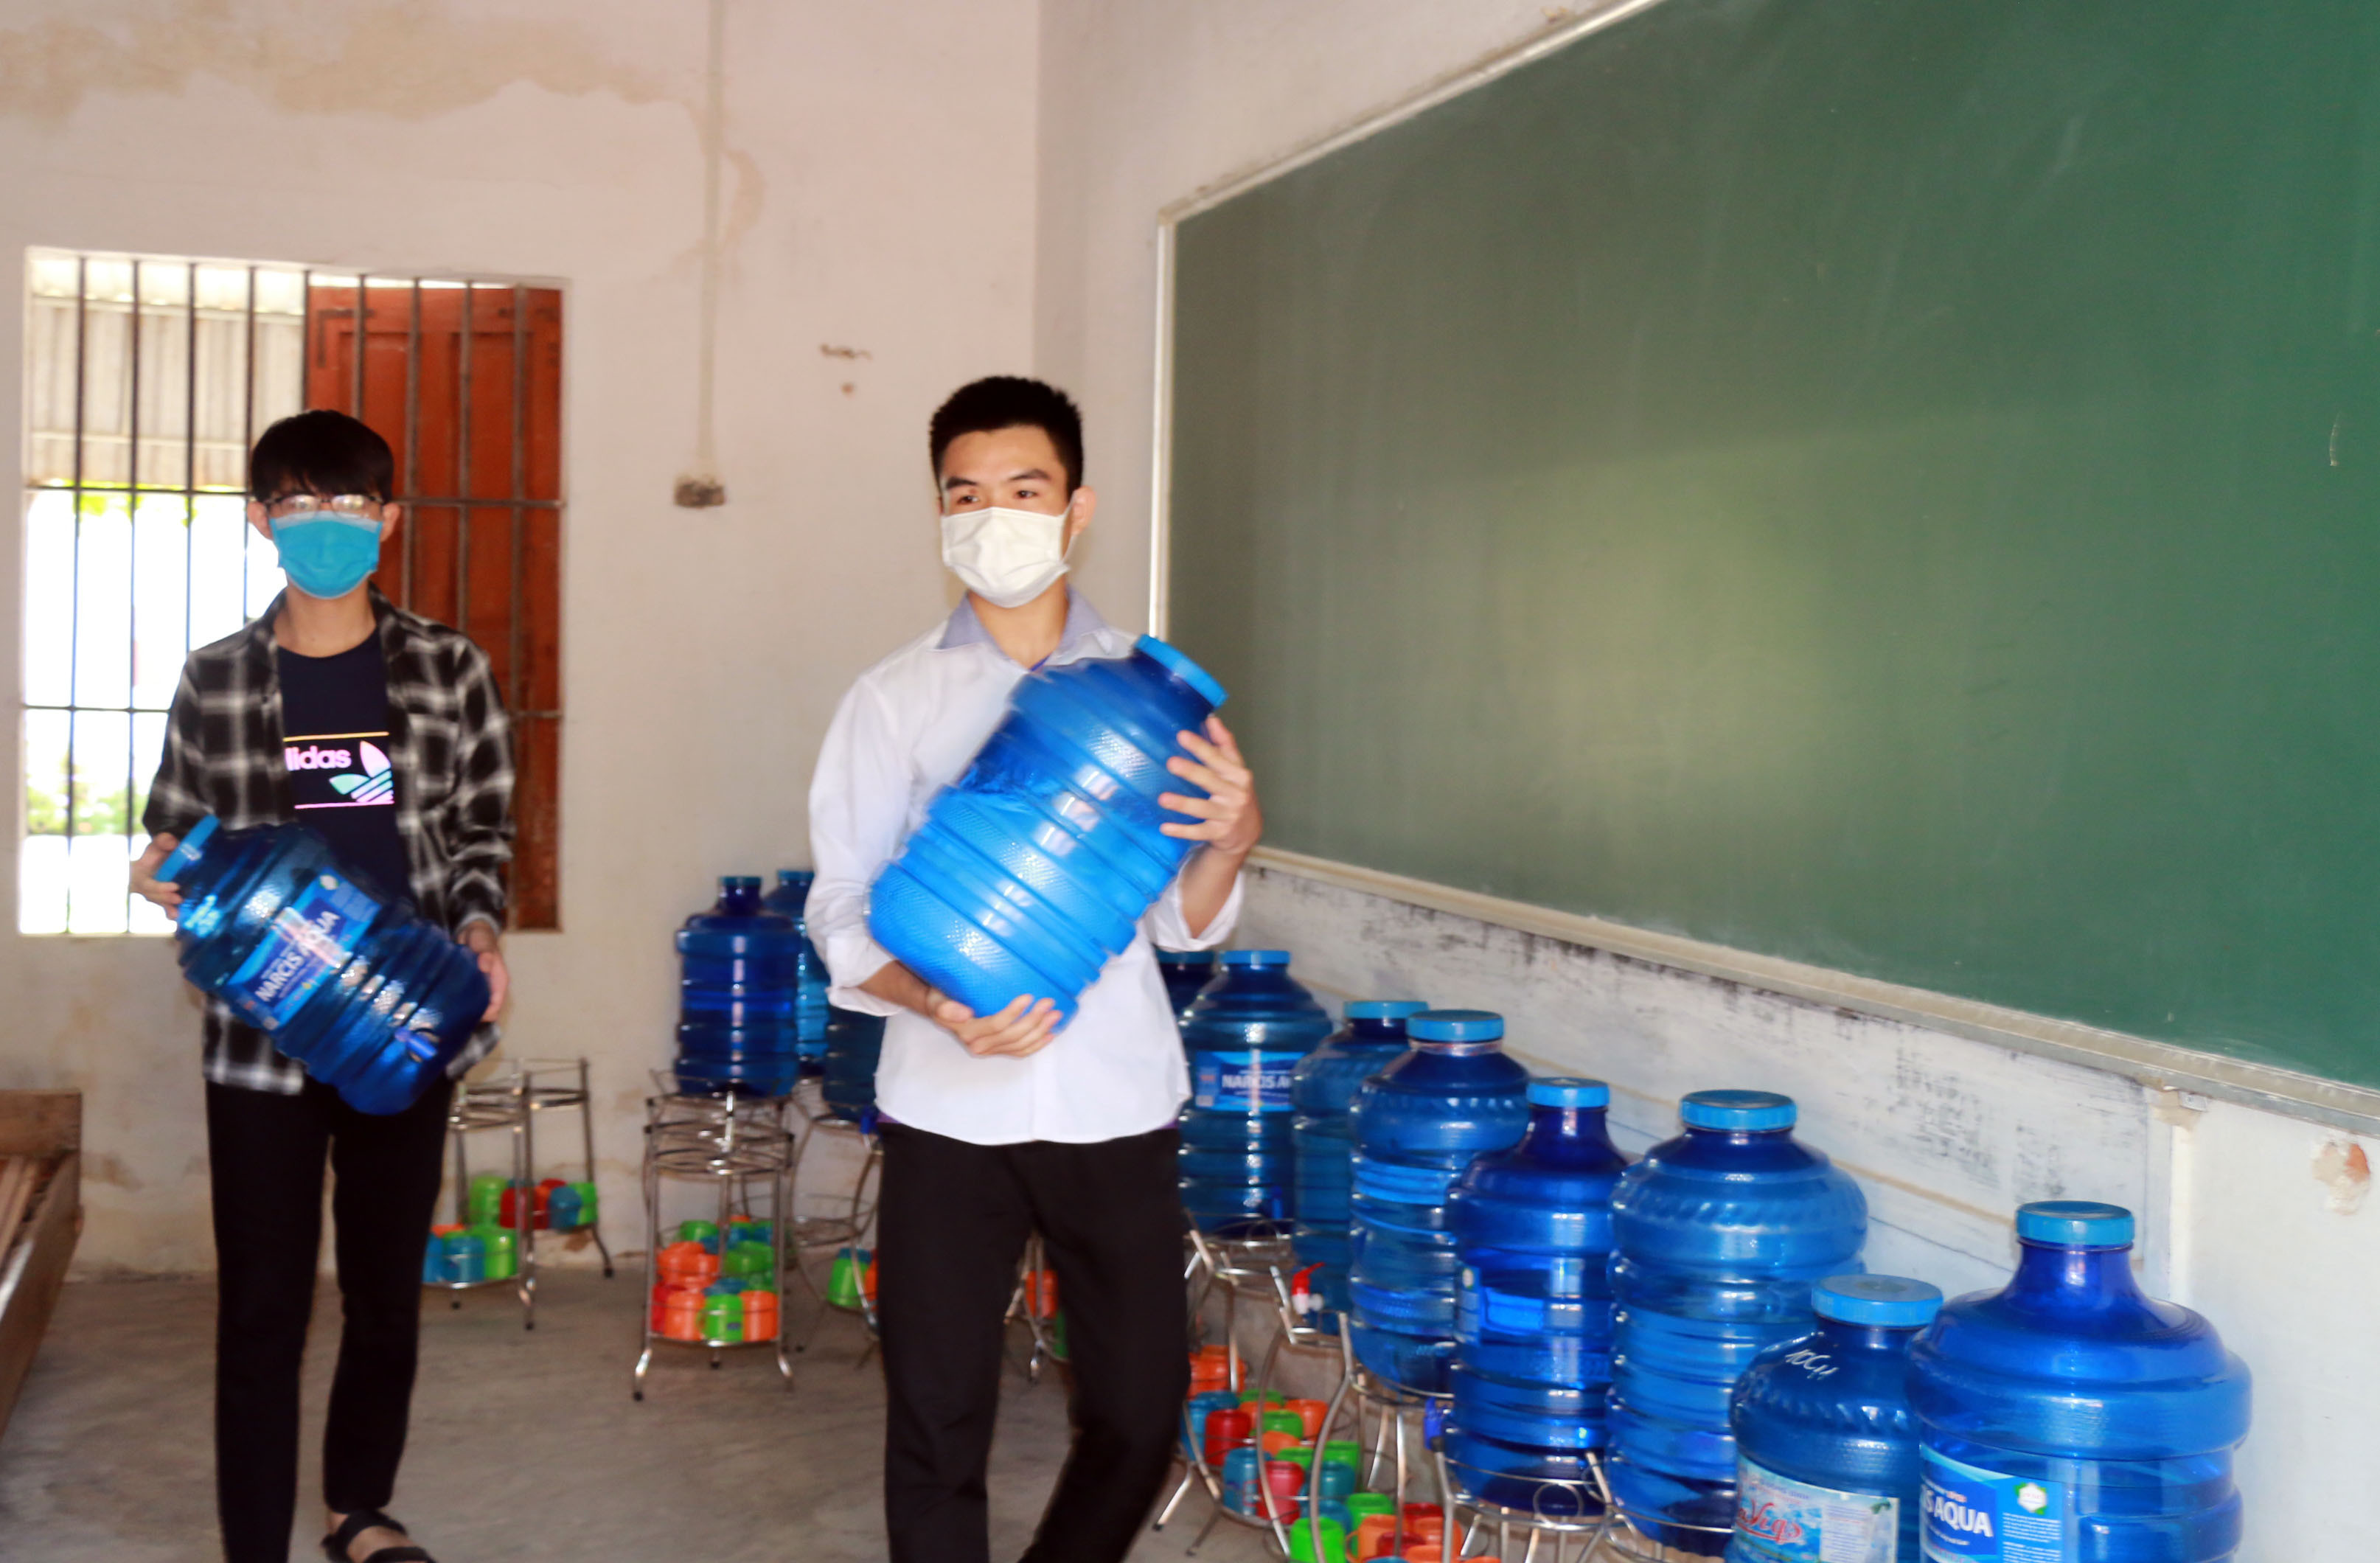 Dự báo trong những ngày tới thời tiết ở Nghệ An vẫn tiếp tục nắng nóng.  Vì vậy, nhà trường đã chuẩn bị đủ nước uống cho học sinh. Ảnh: Mỹ Hà.